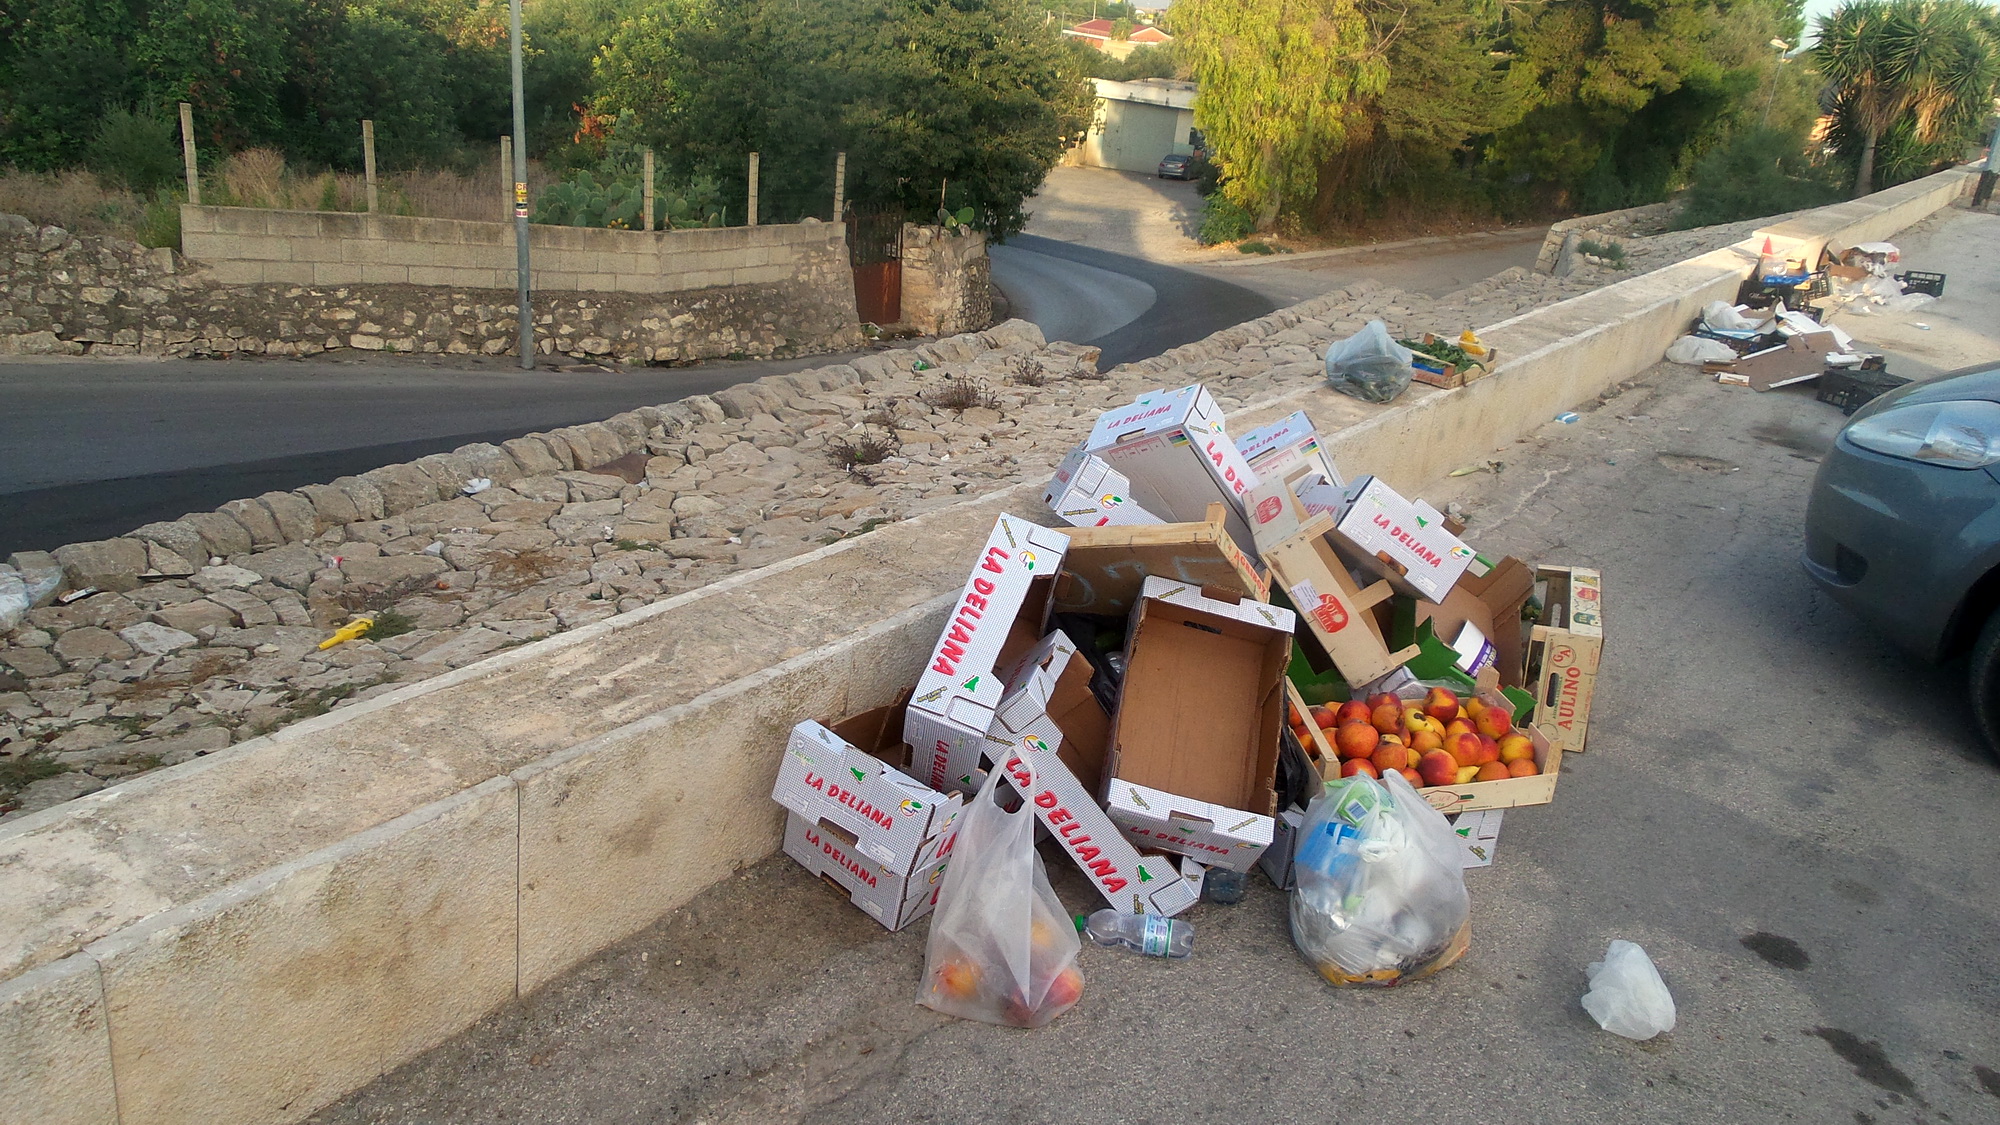  Il mercatino del venerdì diventa discarica: i rifiuti lasciati a marcire